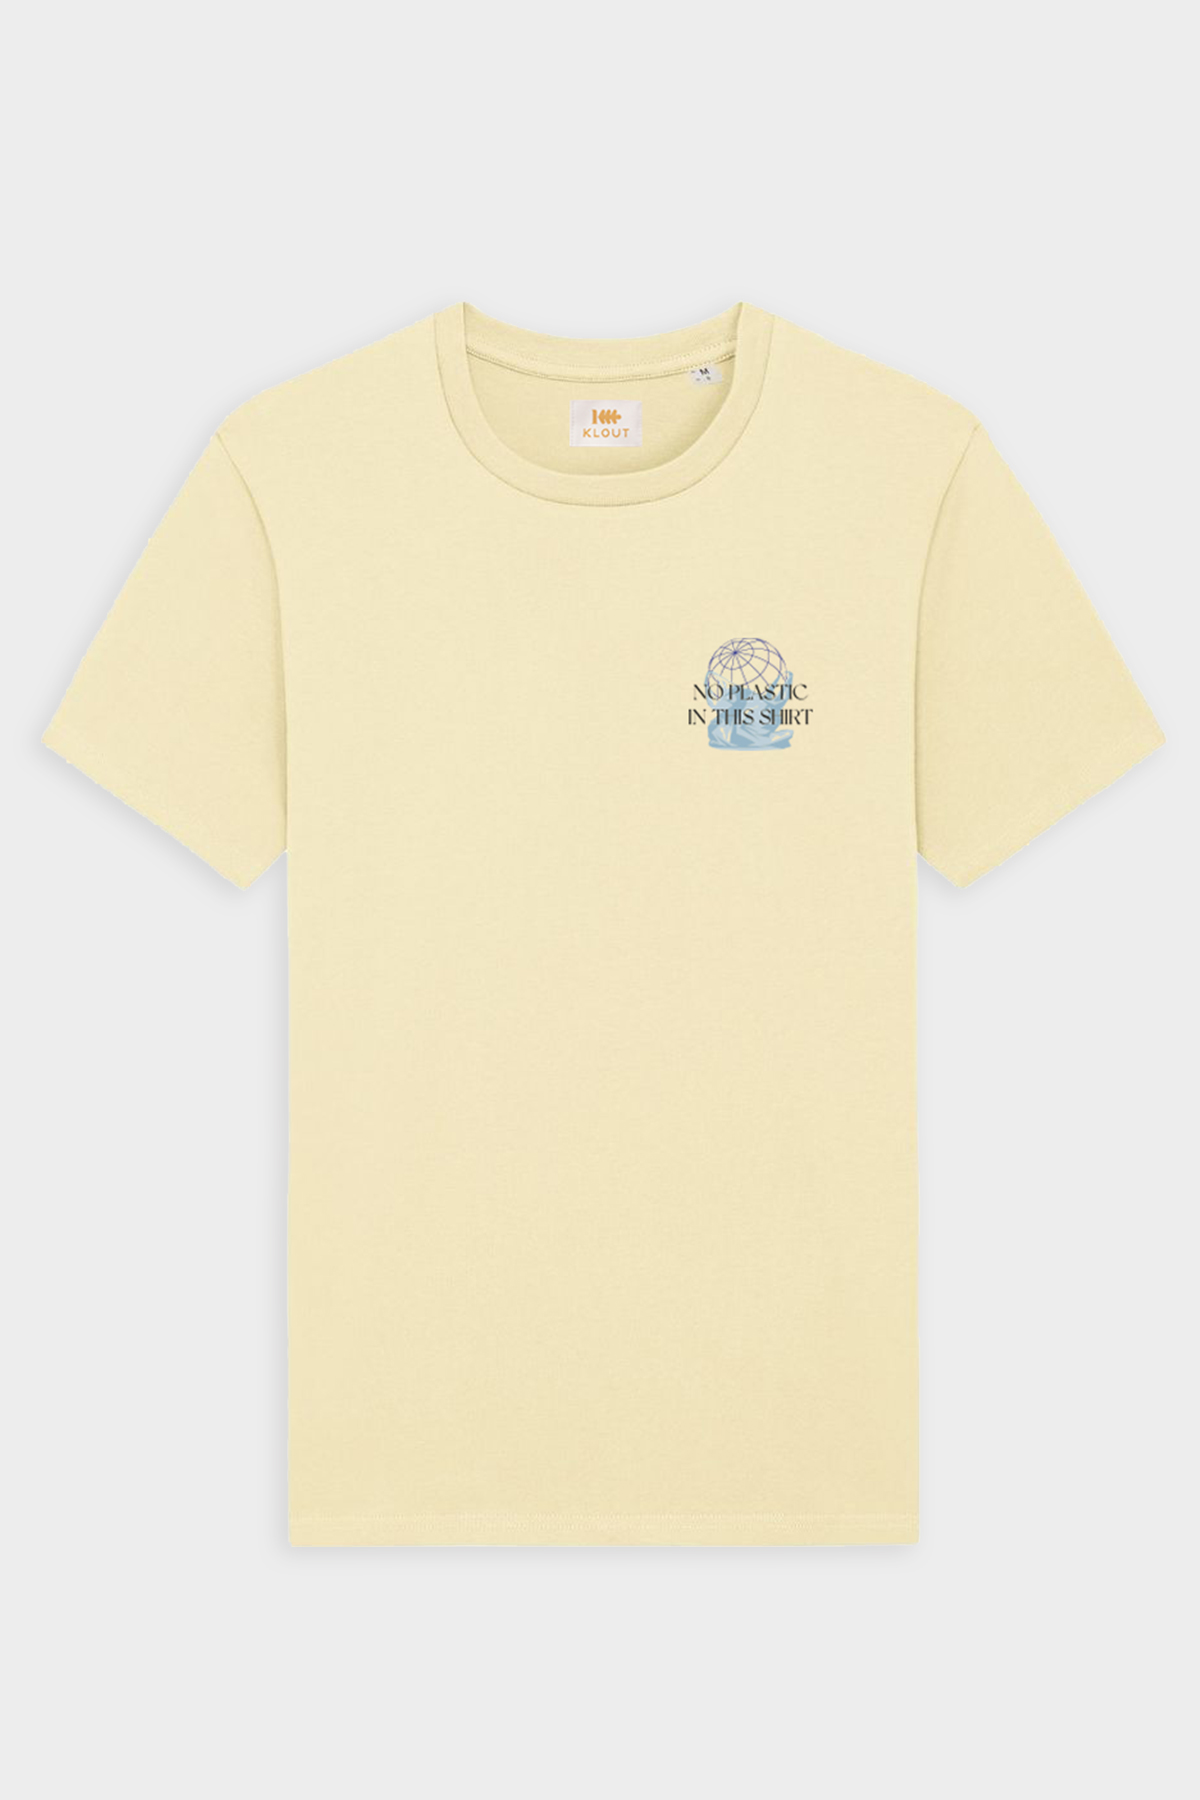 Camiseta Klout No Plastic Amarillo 